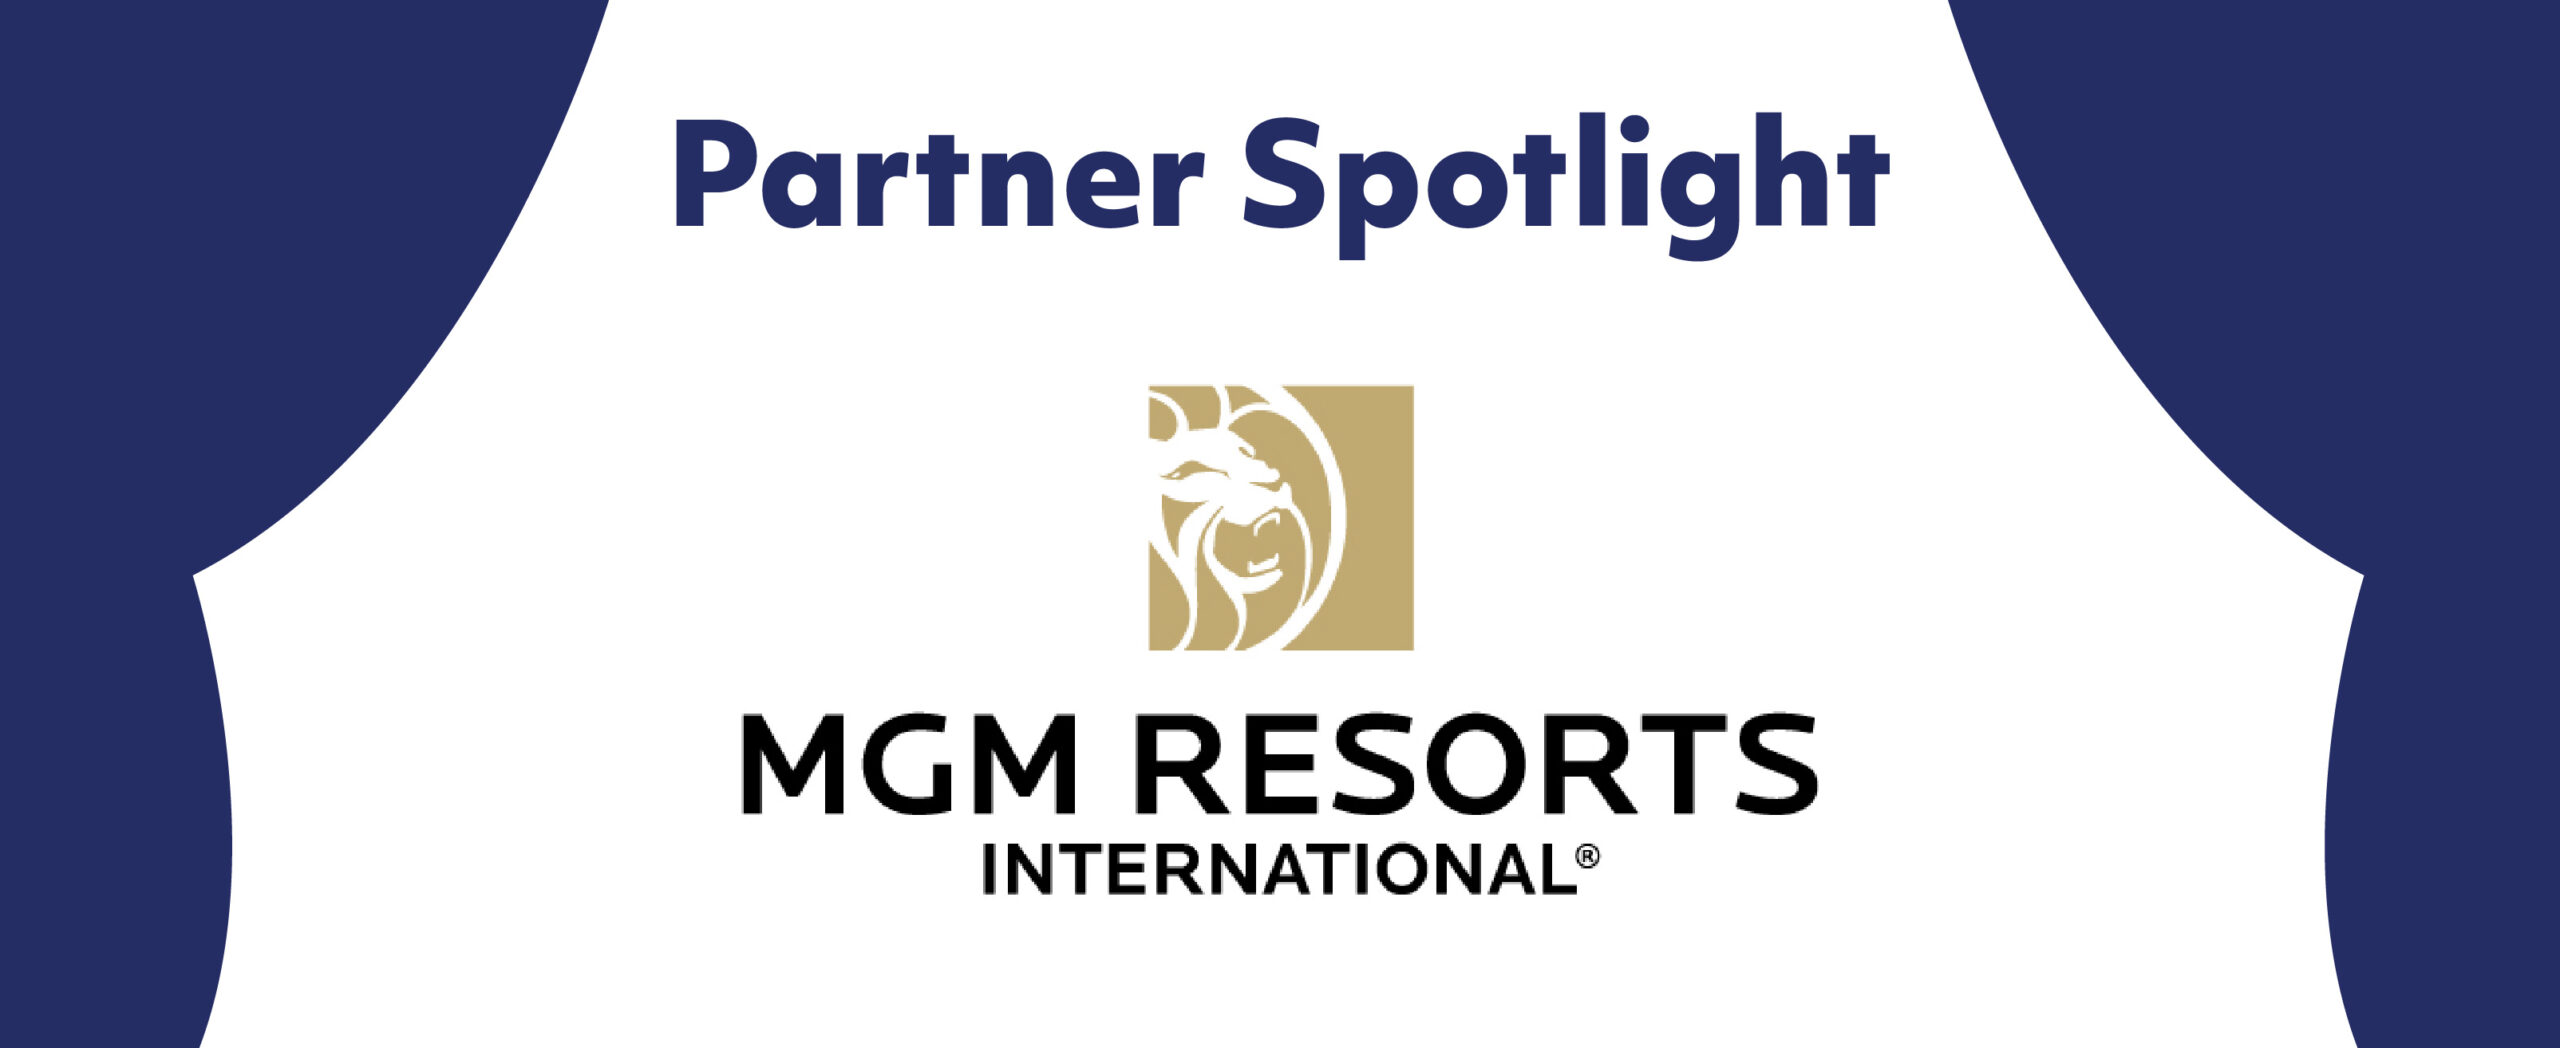 Partner Spotlight: MGM Resorts International